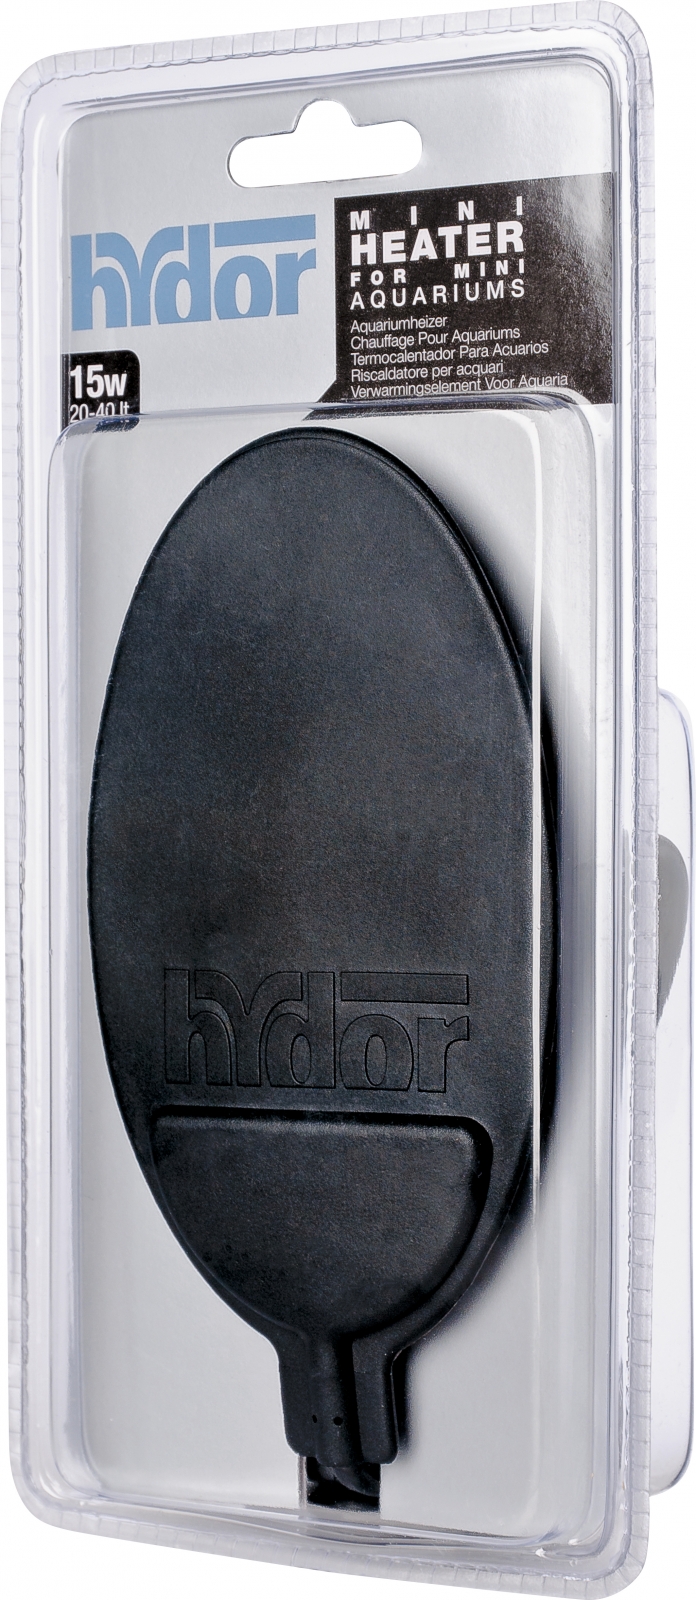 hydor-mini-heater-15